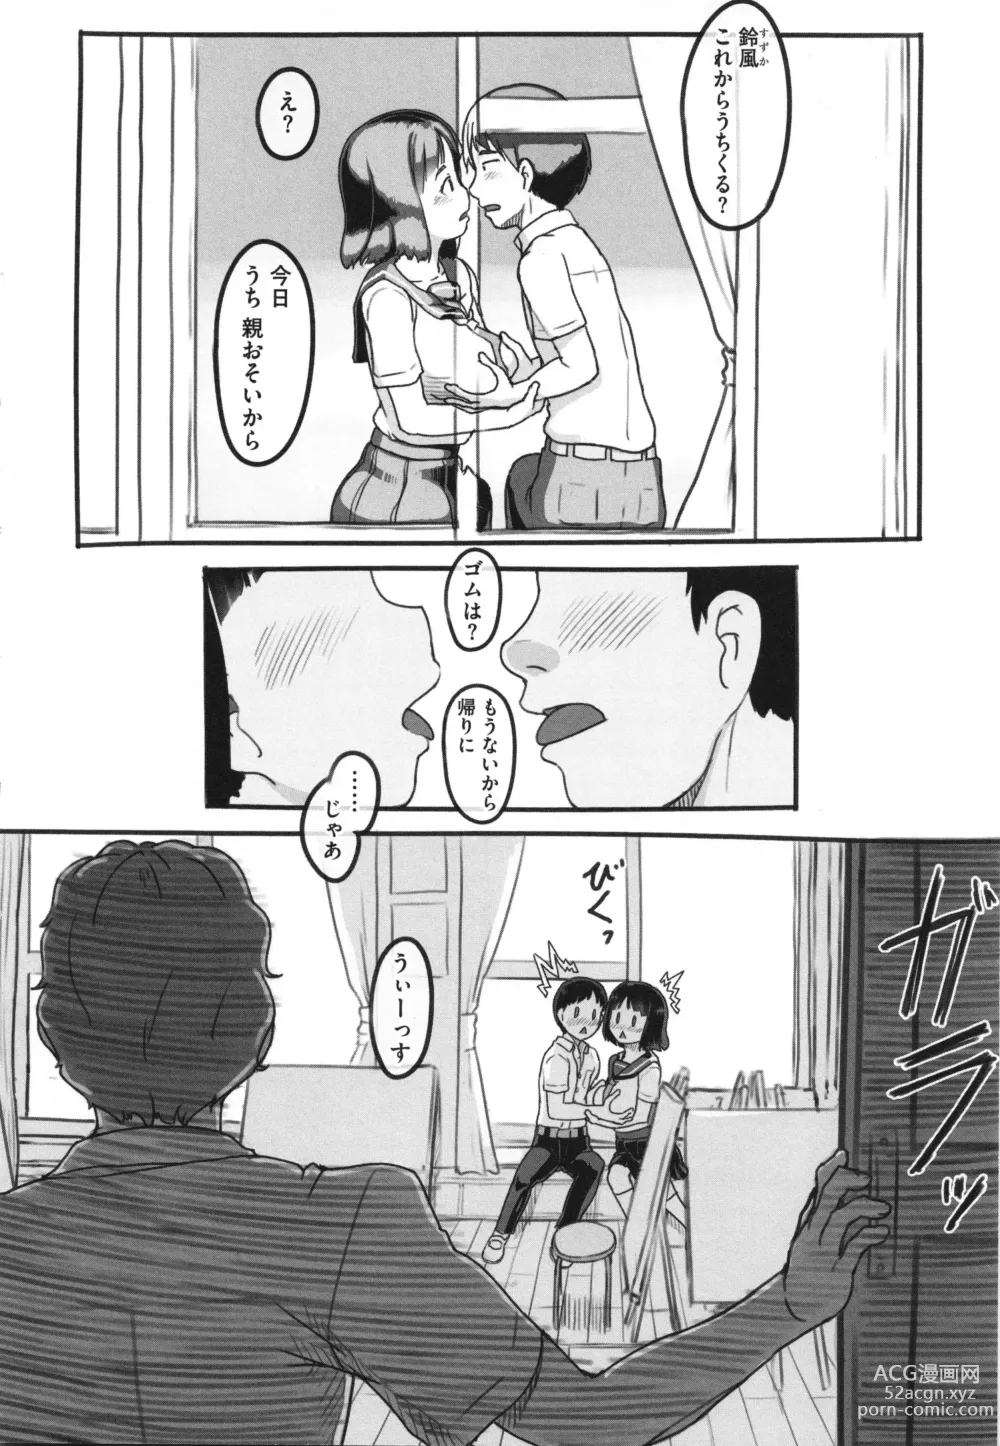 Page 13 of manga Kanojo wa Mada Kaette Inai